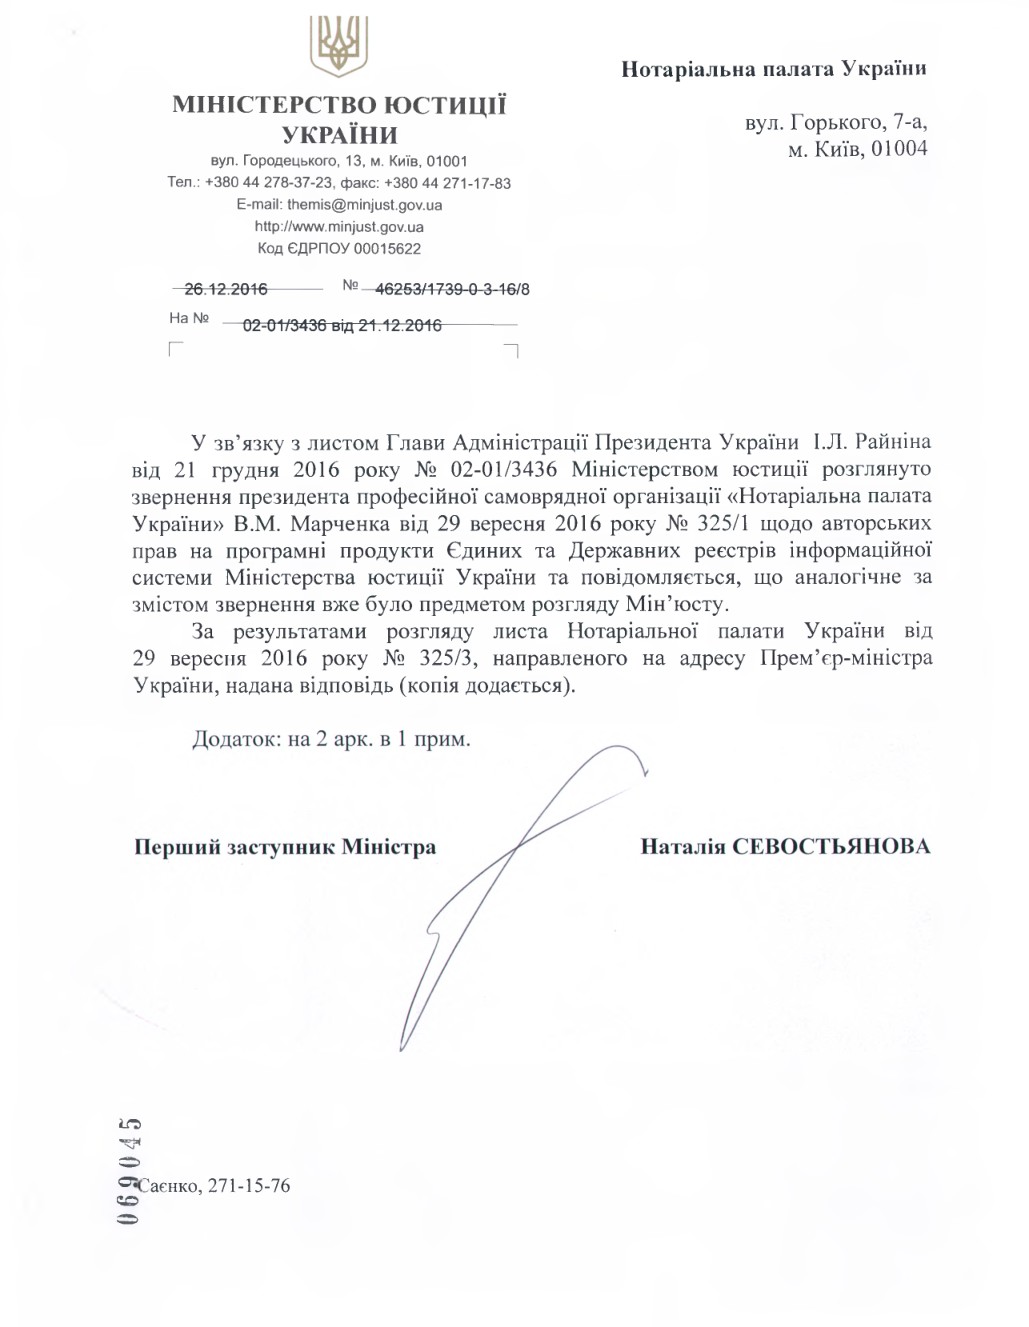 Лист Міністерства юстиції України щодо авторських прав на програмні продукти Єдиних та Державних реєстрів інформаційної системи Міністерства юстиції України
